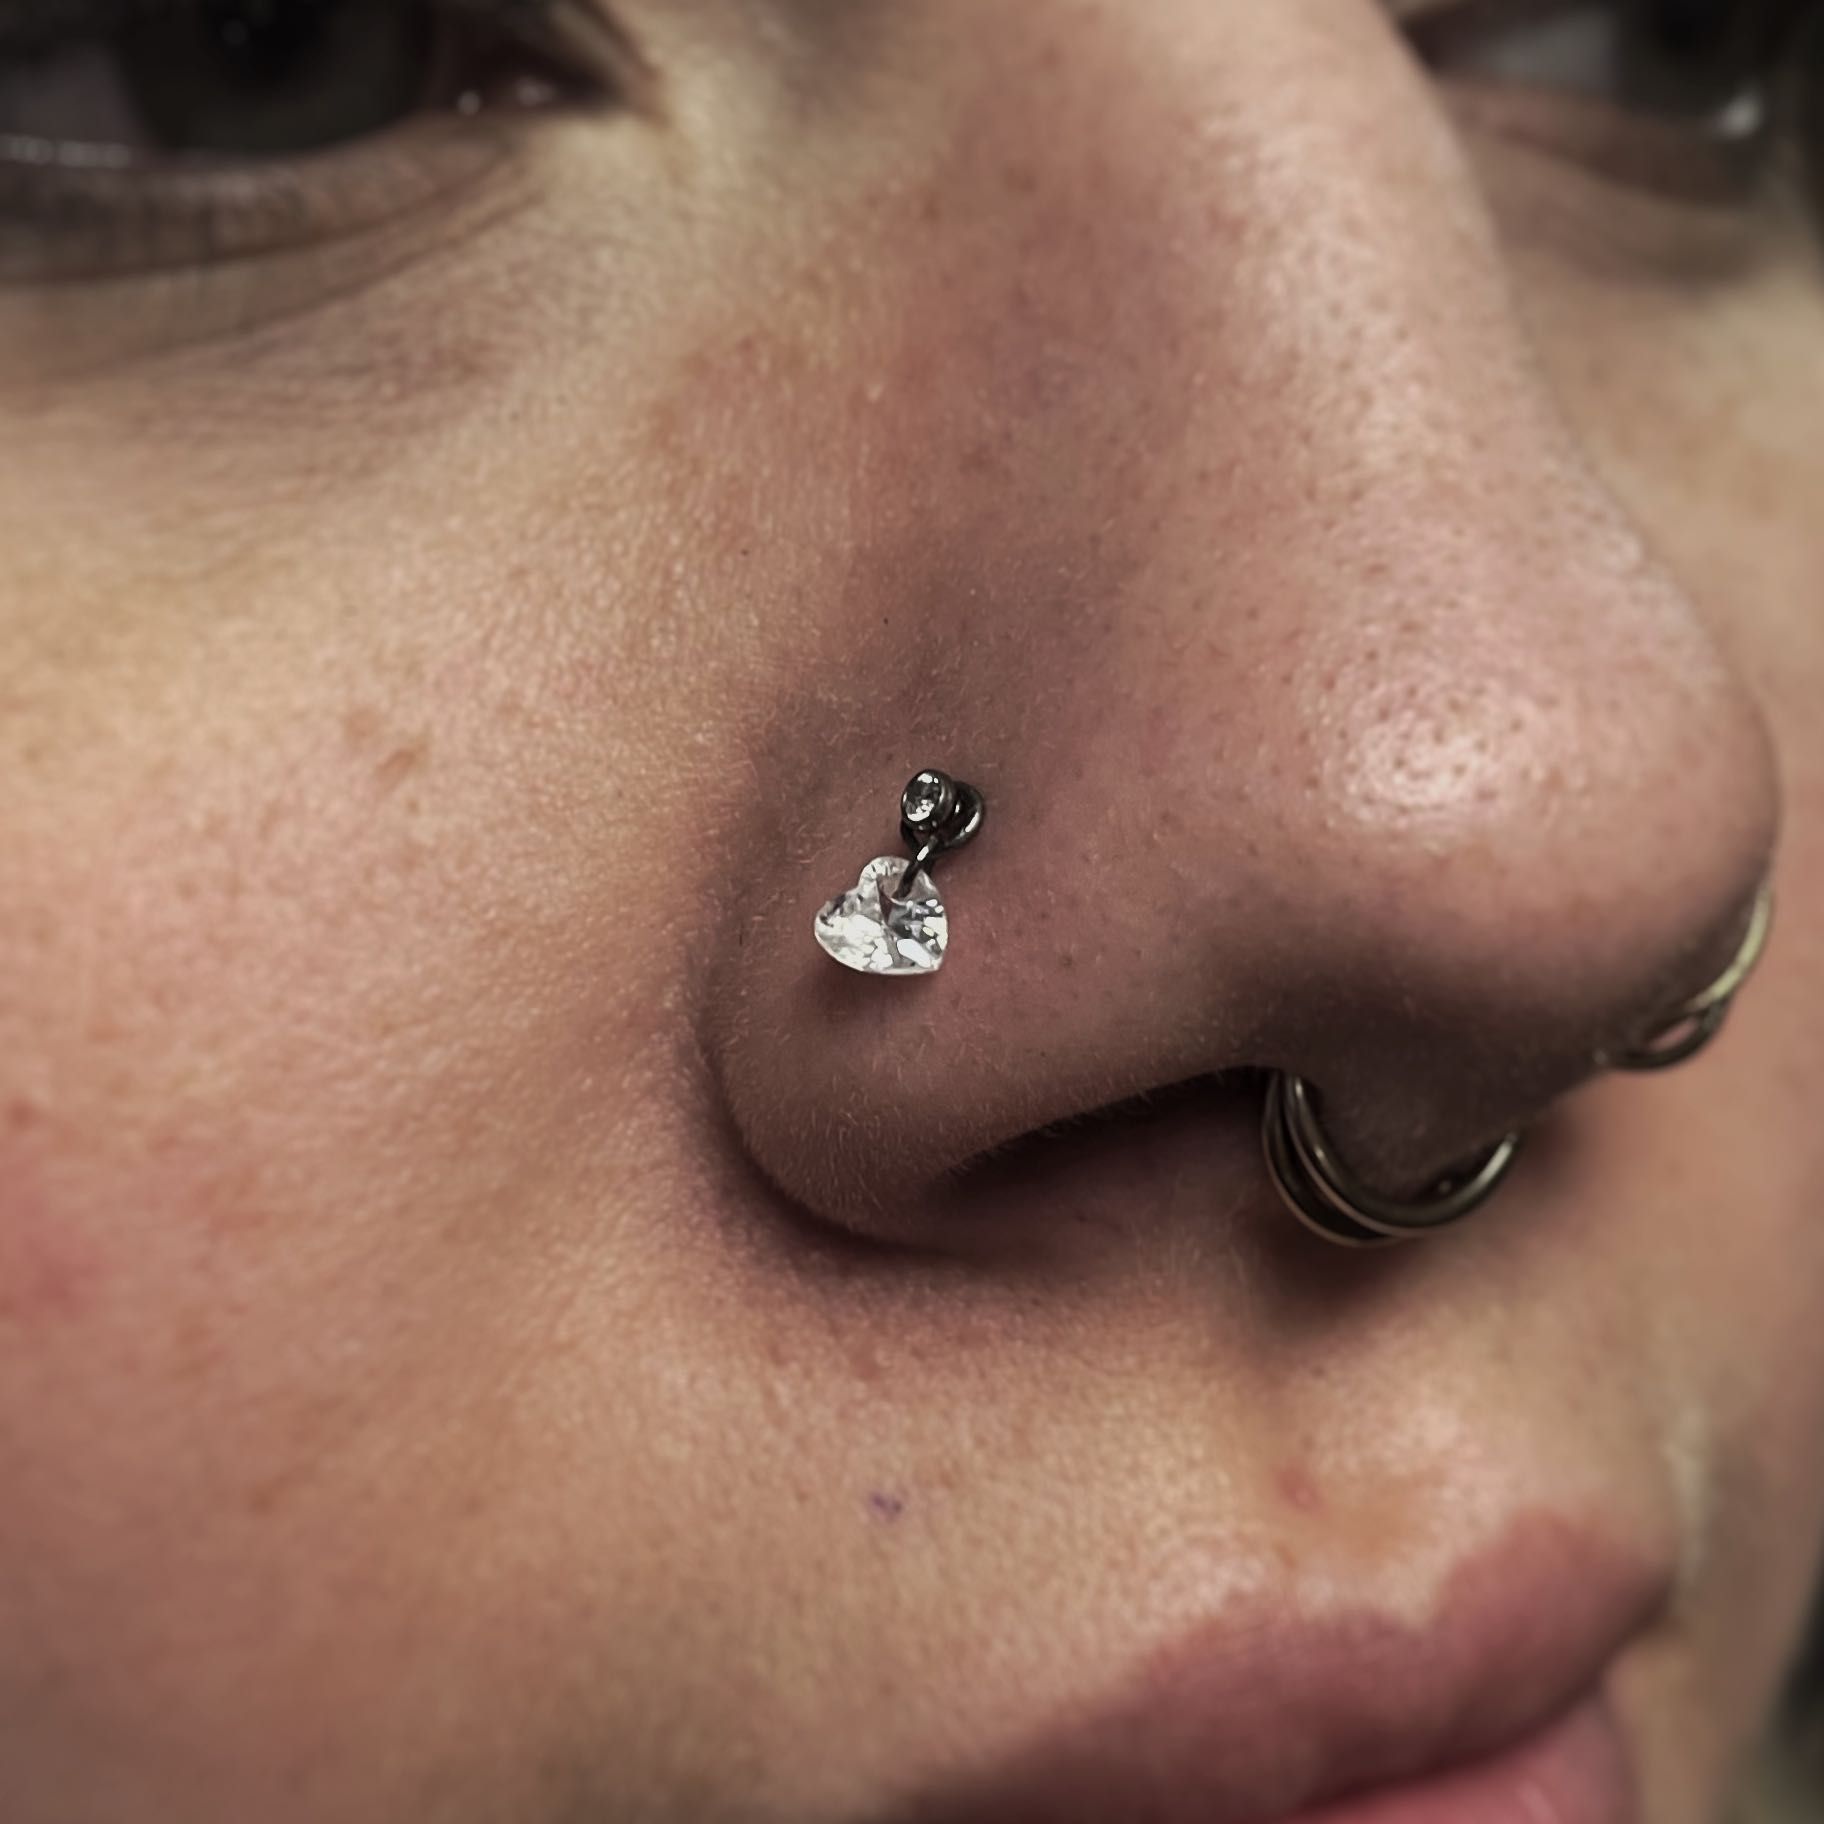 Nose piercing (Age 13+) portfolio